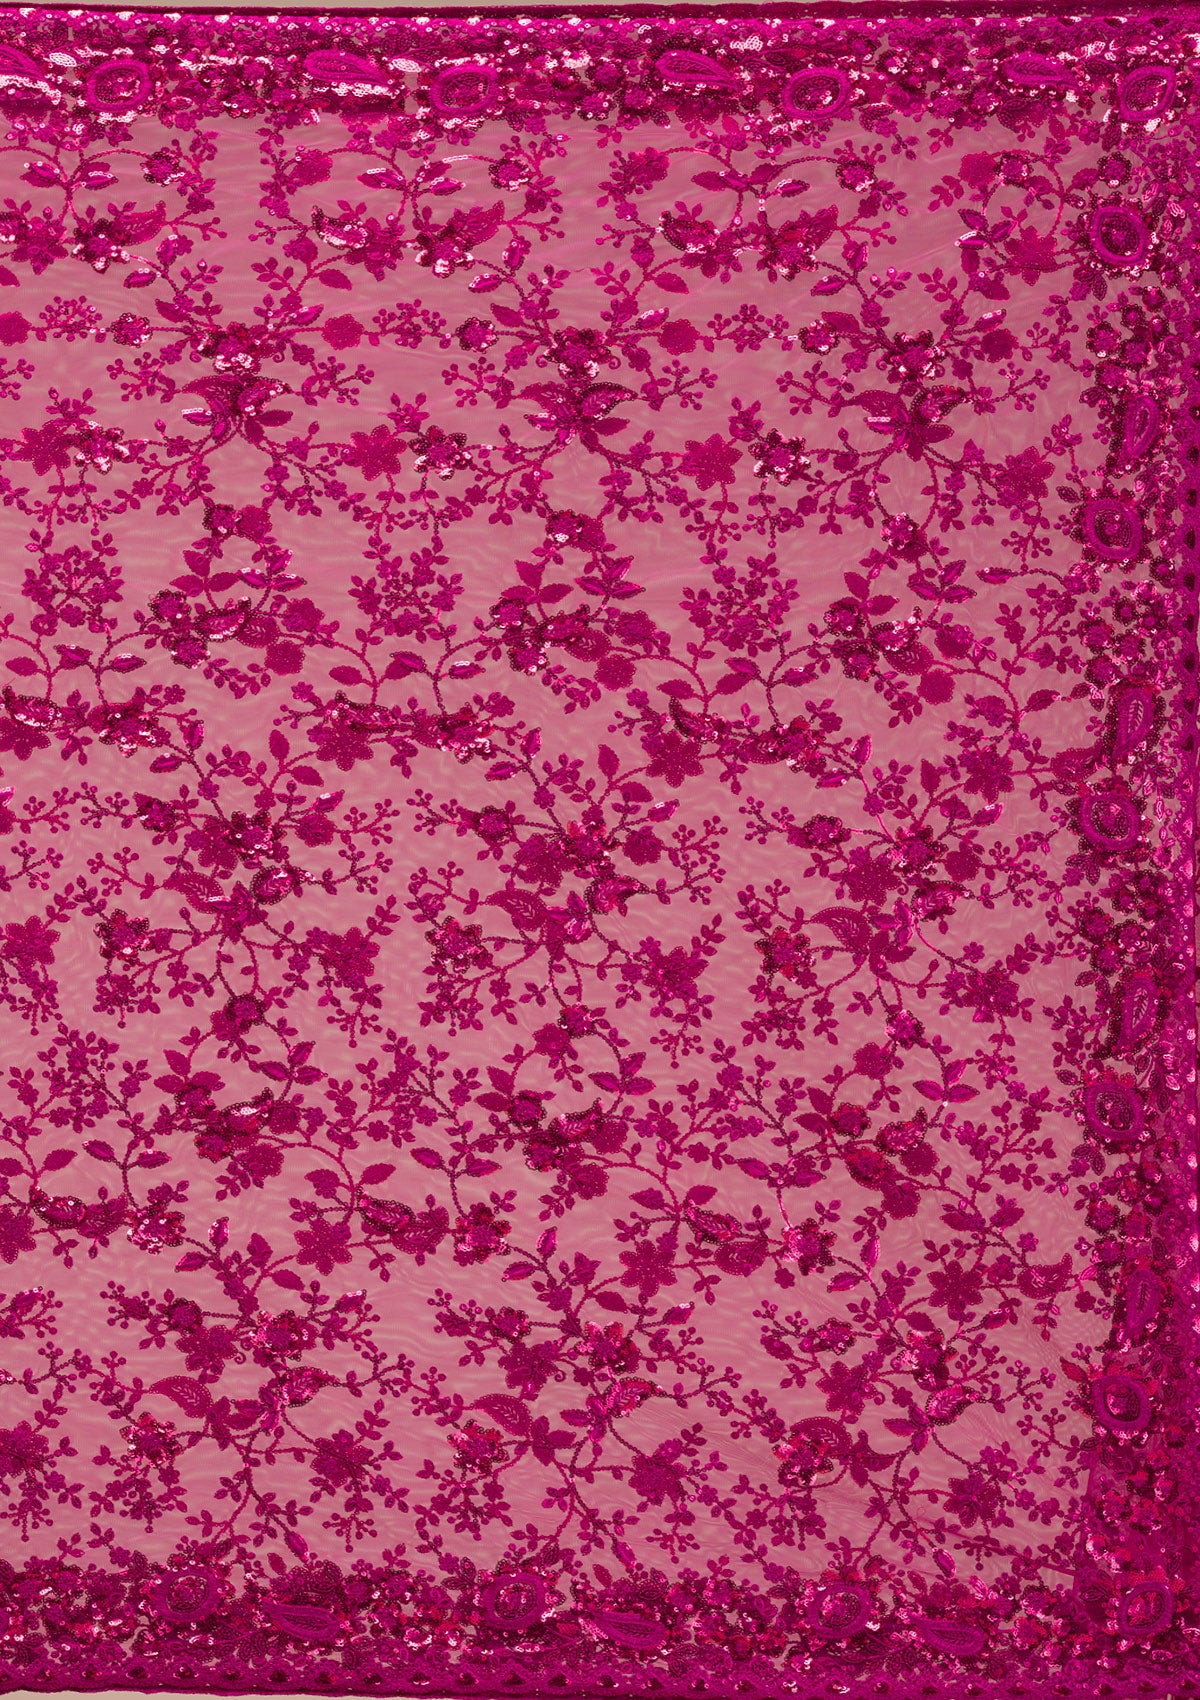 Magenta Pink Sequins Net Saree